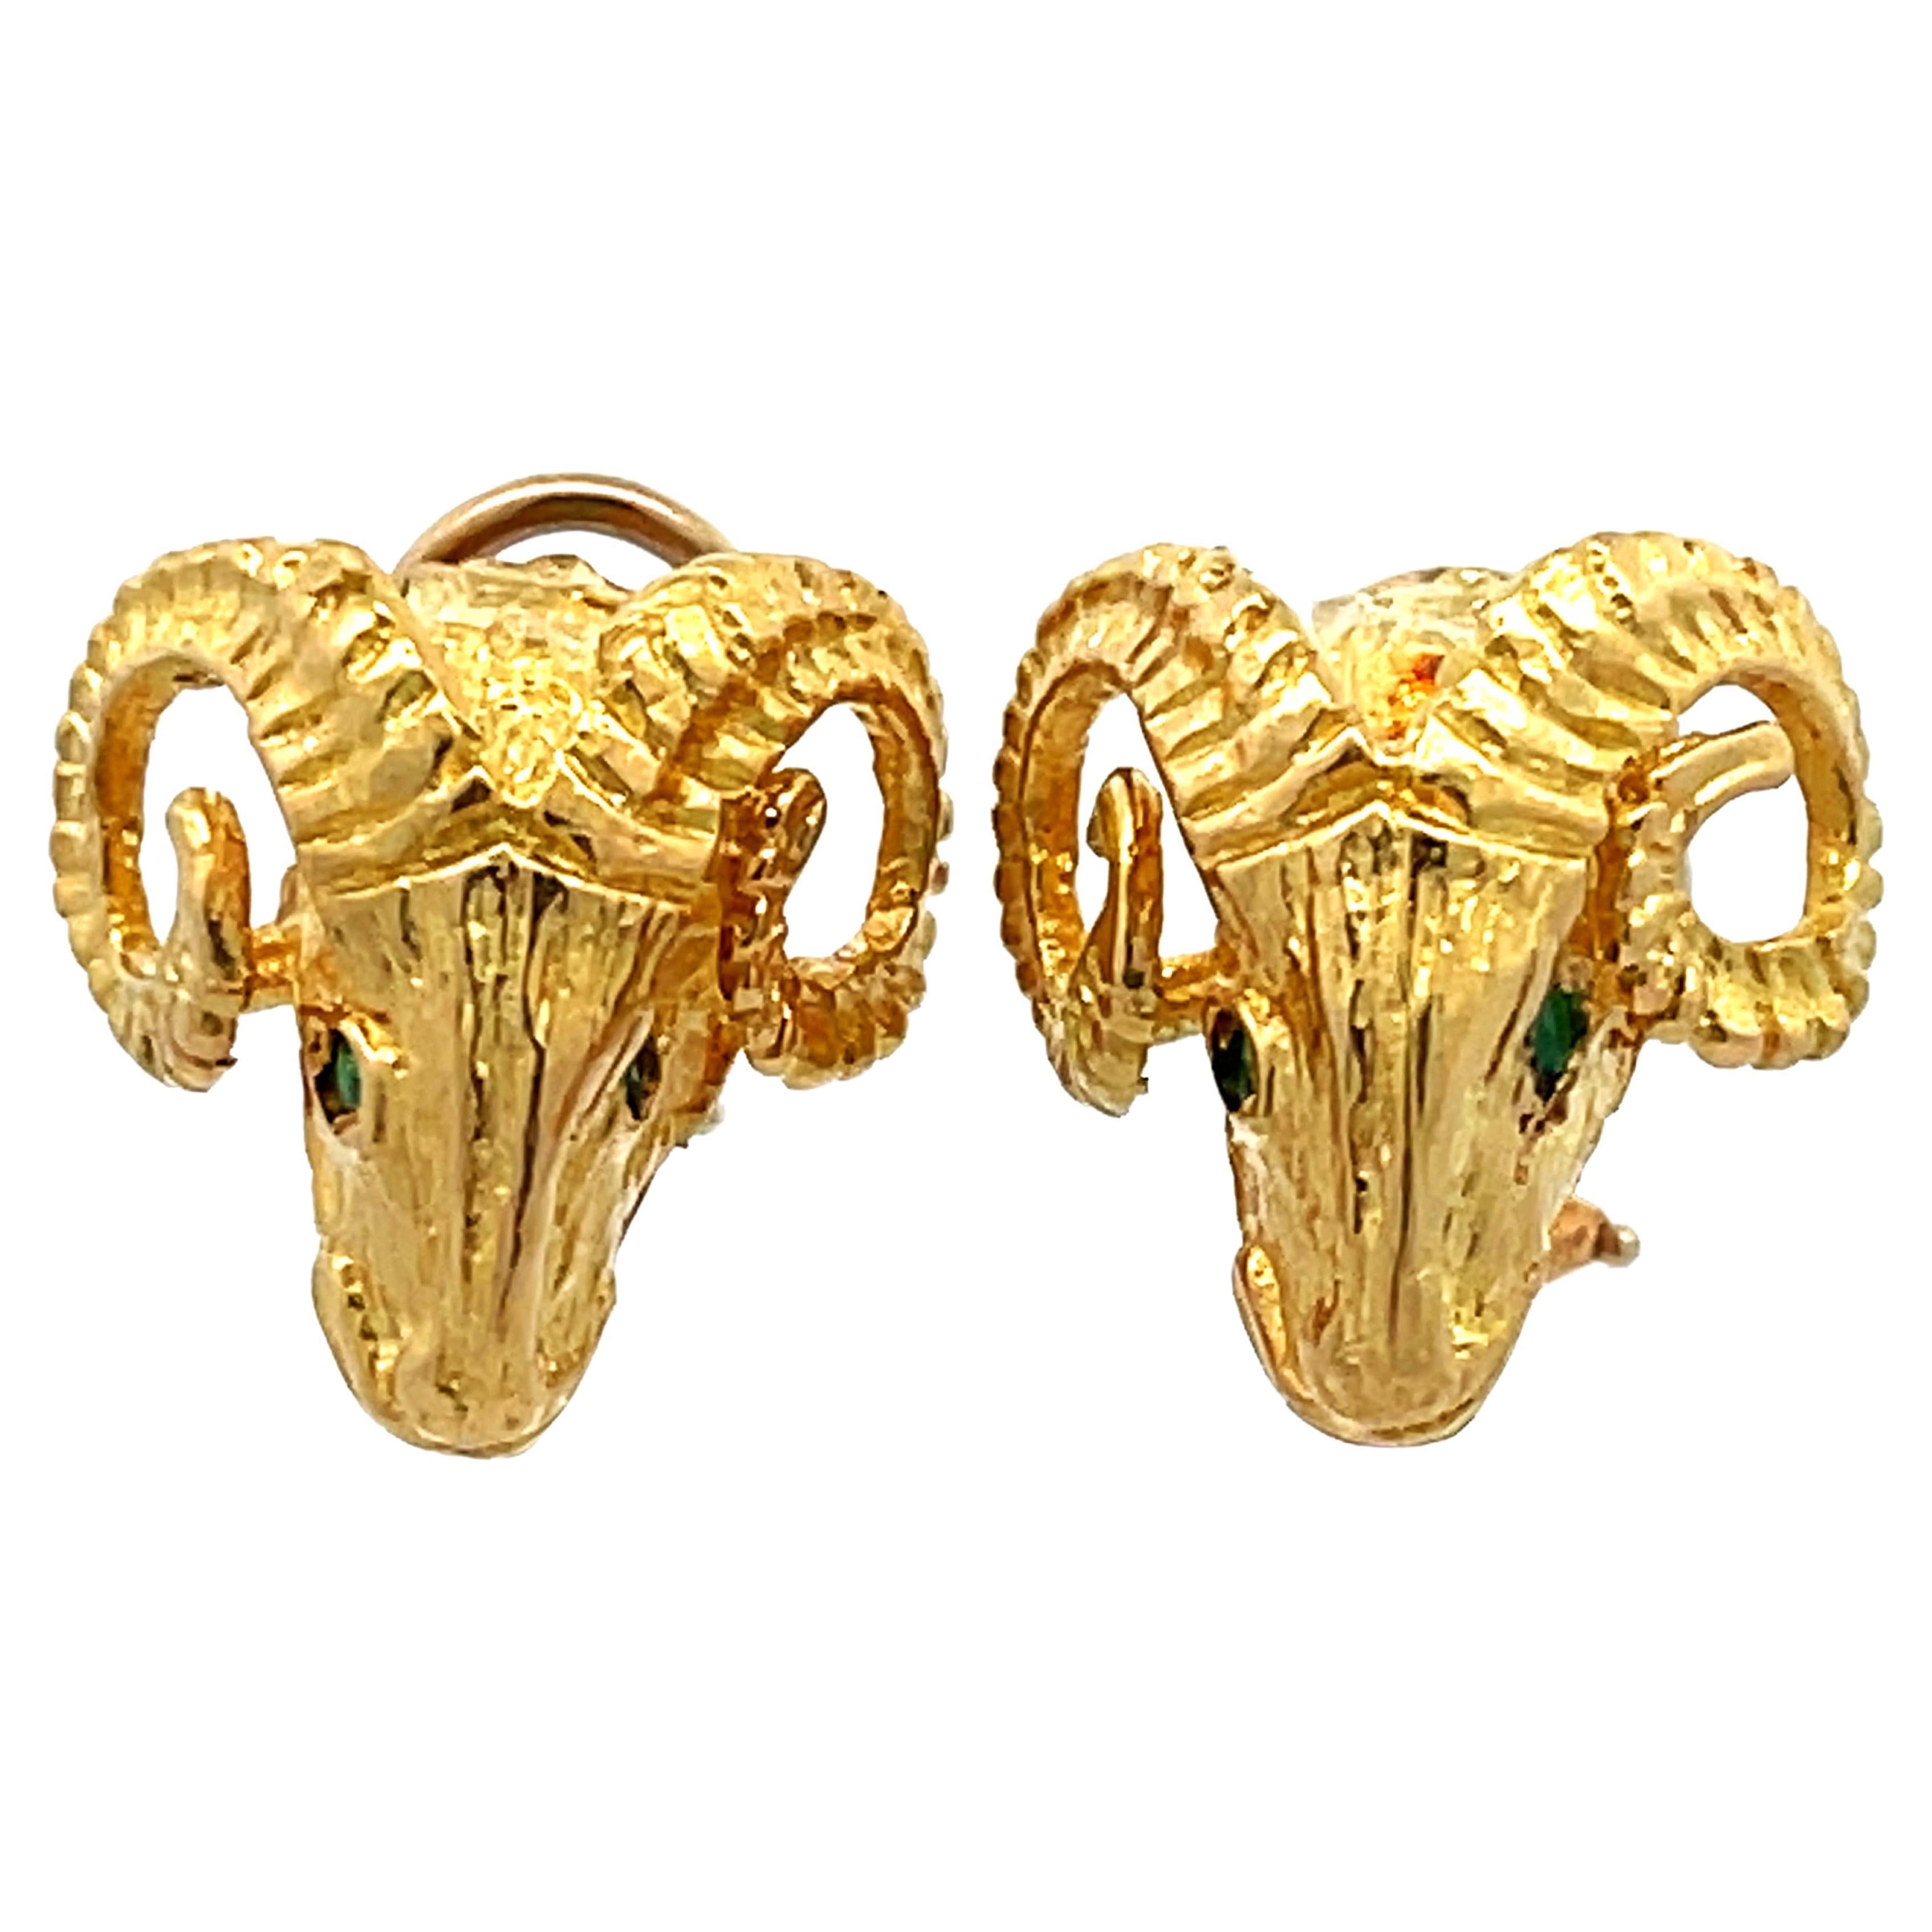 Black Opal Oval Stud Earrings in 14k Yellow Gold